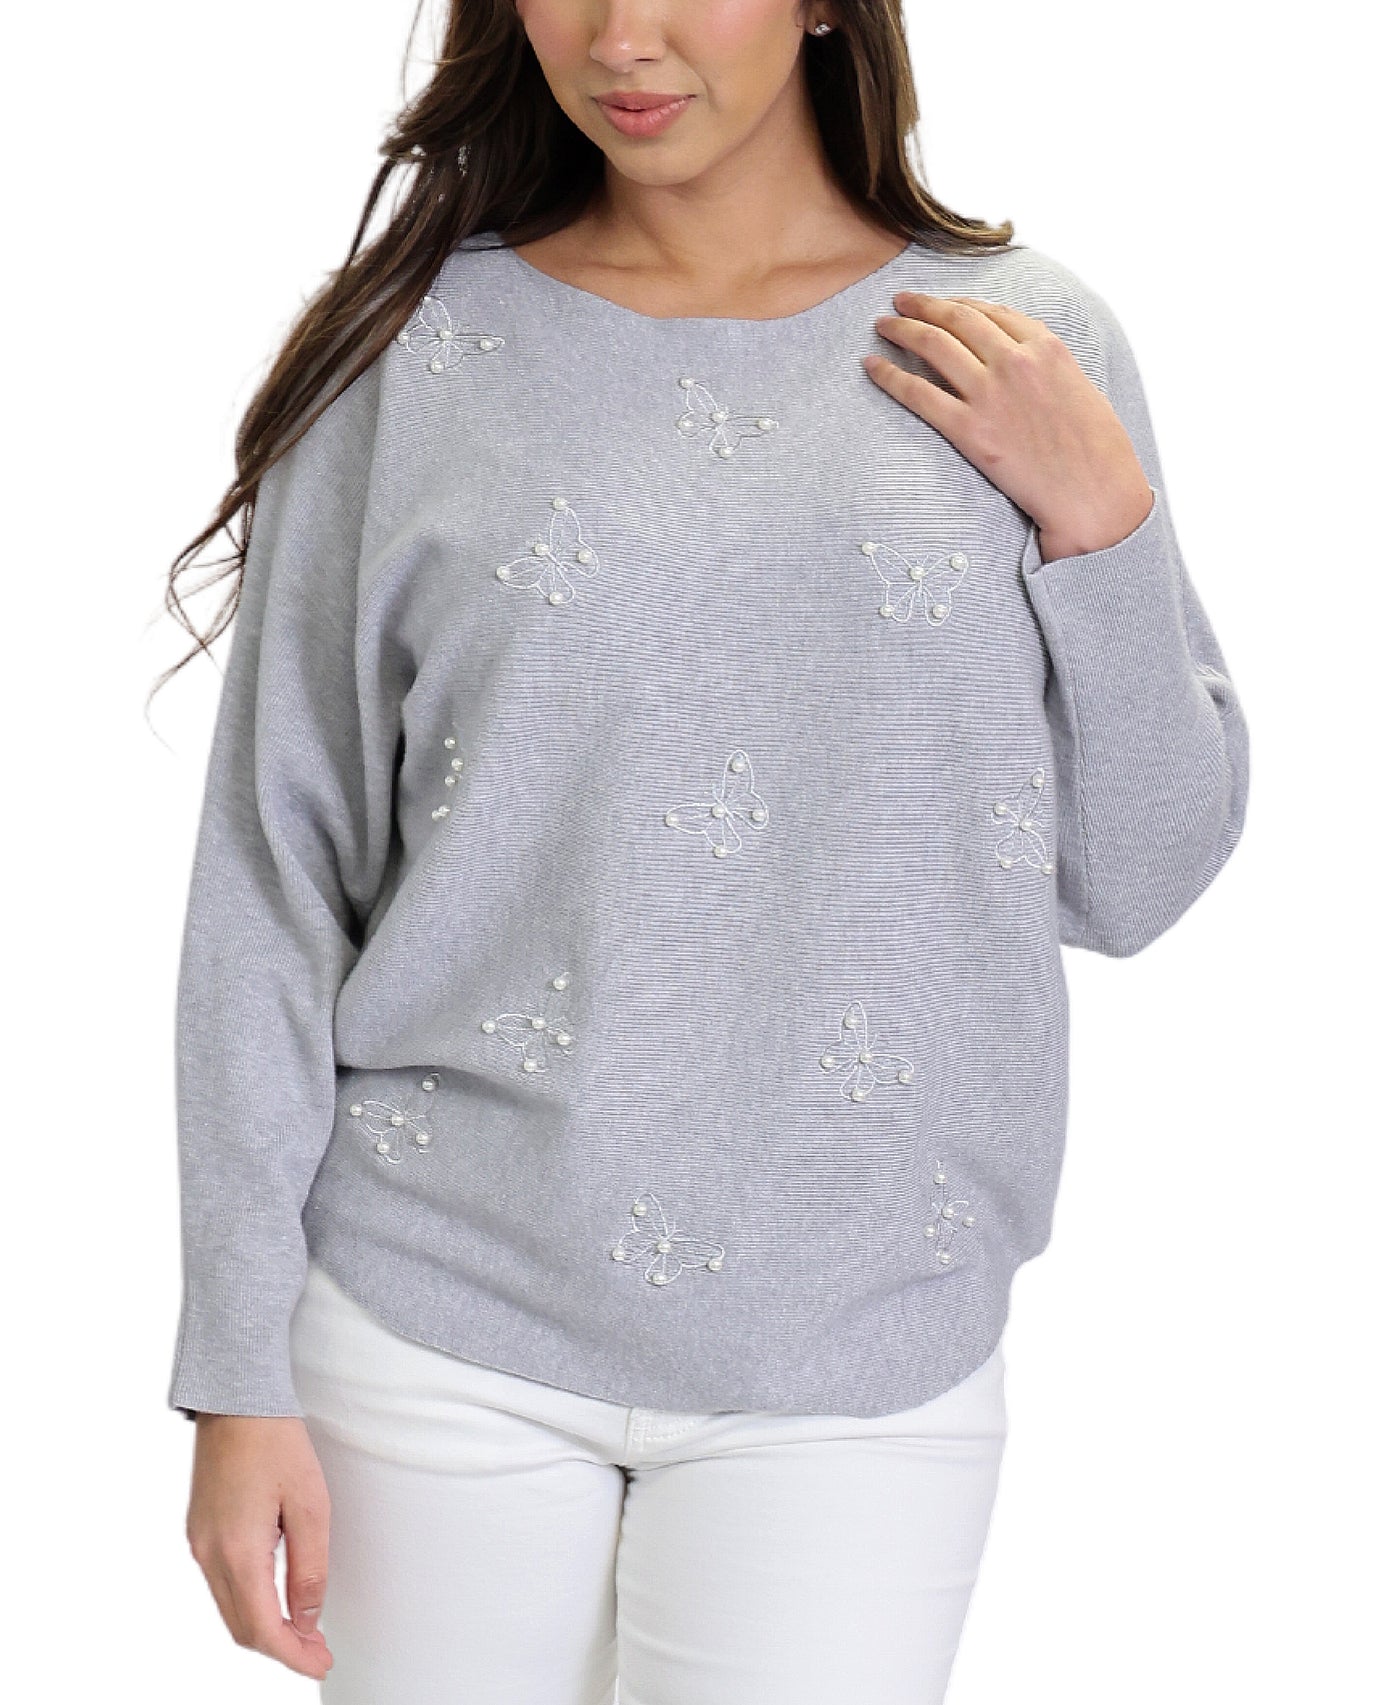 Sweater w/ Butterflies & Pearls image 1